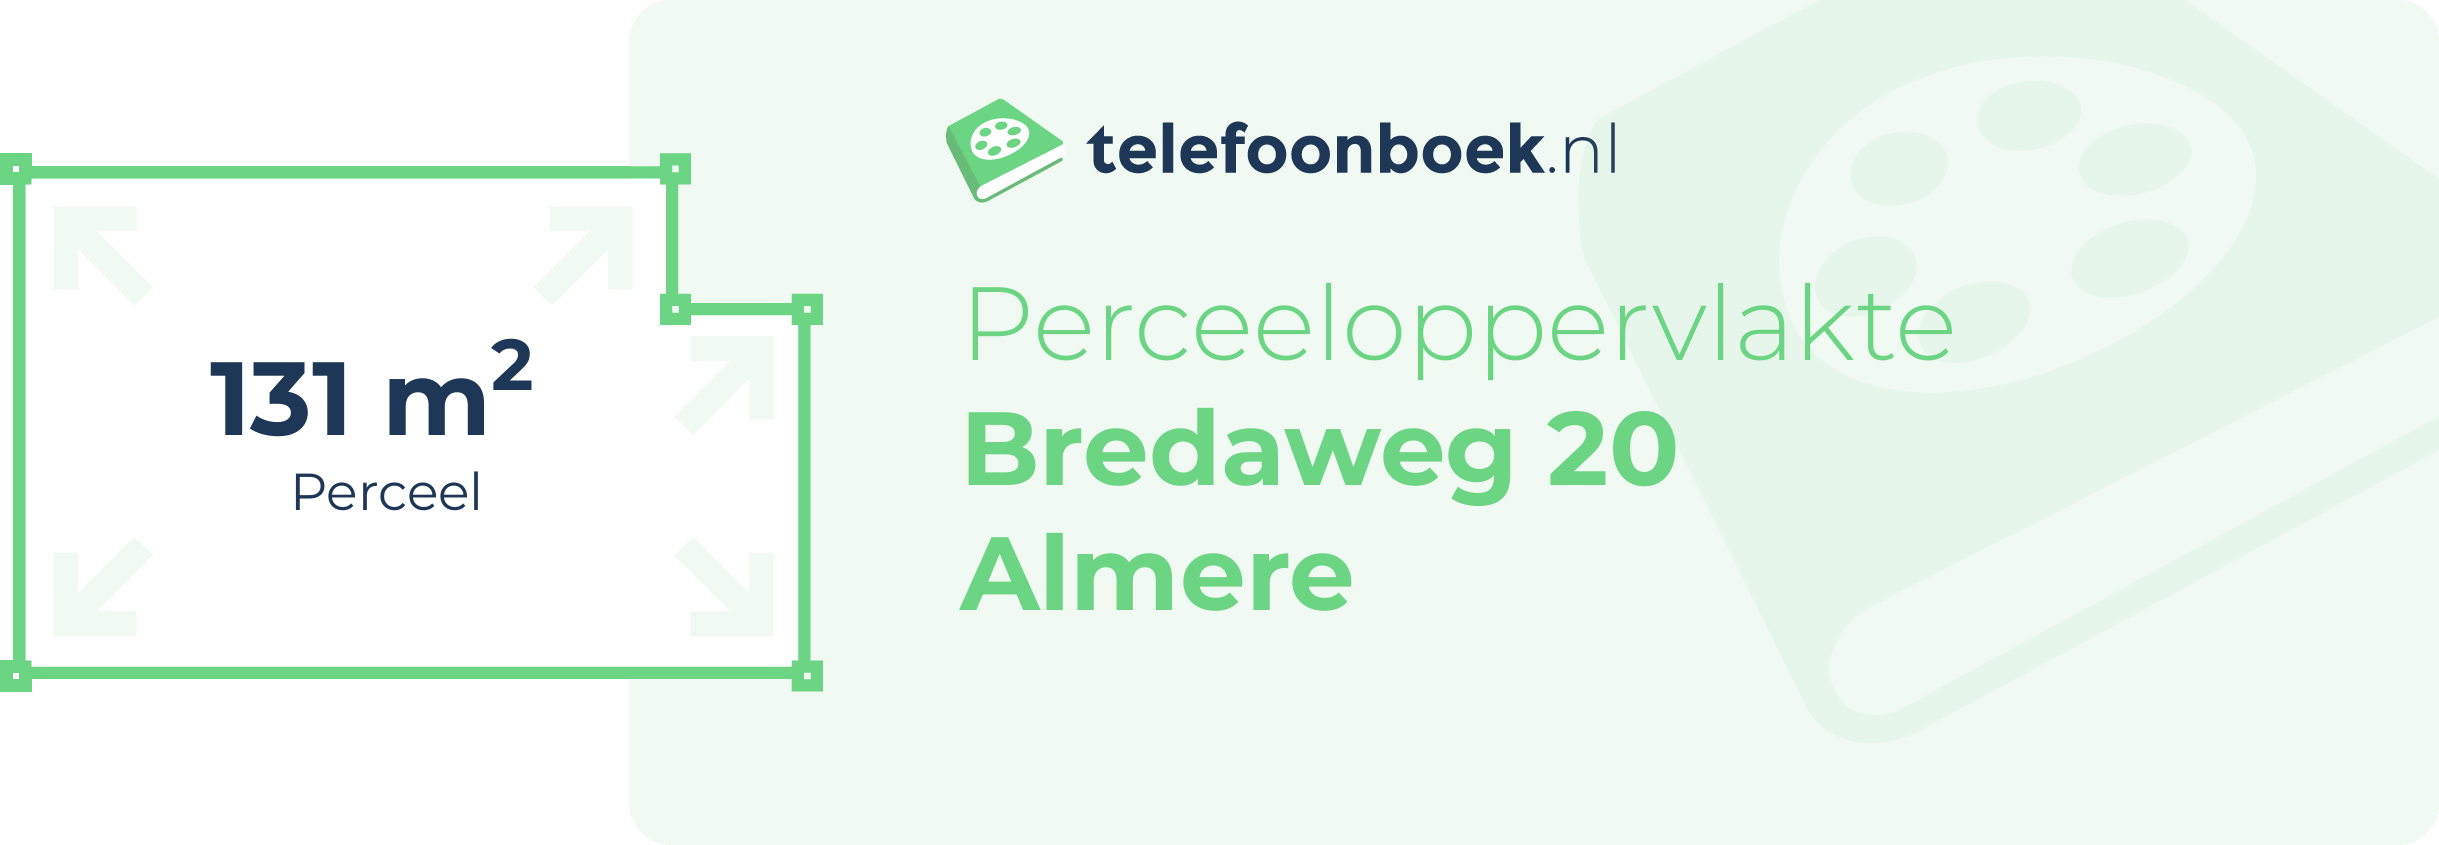 Perceeloppervlakte Bredaweg 20 Almere